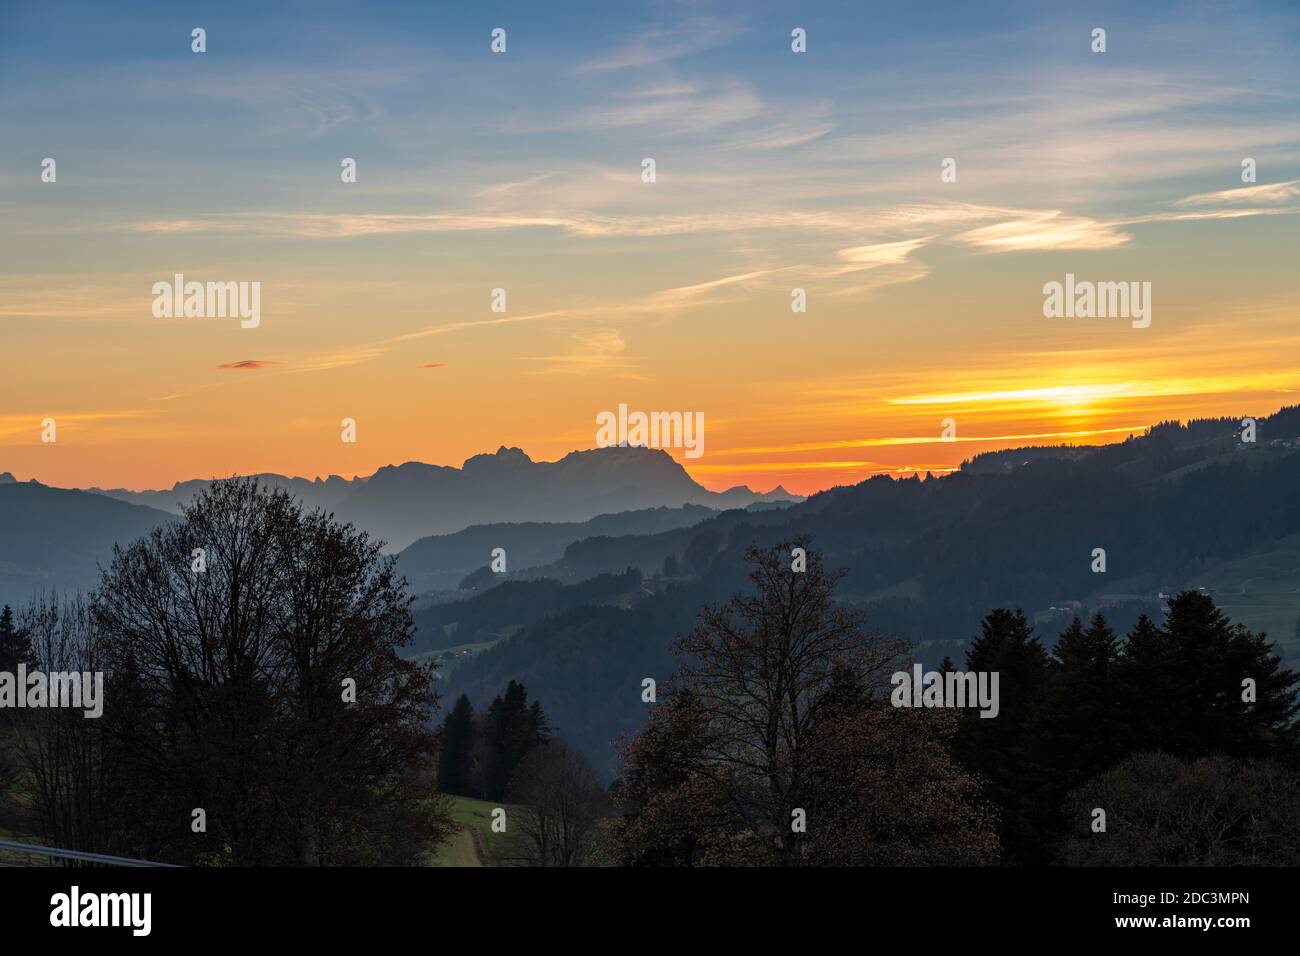 Sunset over Mount Saentis in Swiss Alps with Bregenzerwald, Austria, Vorarlberg, in foreground Stock Photo